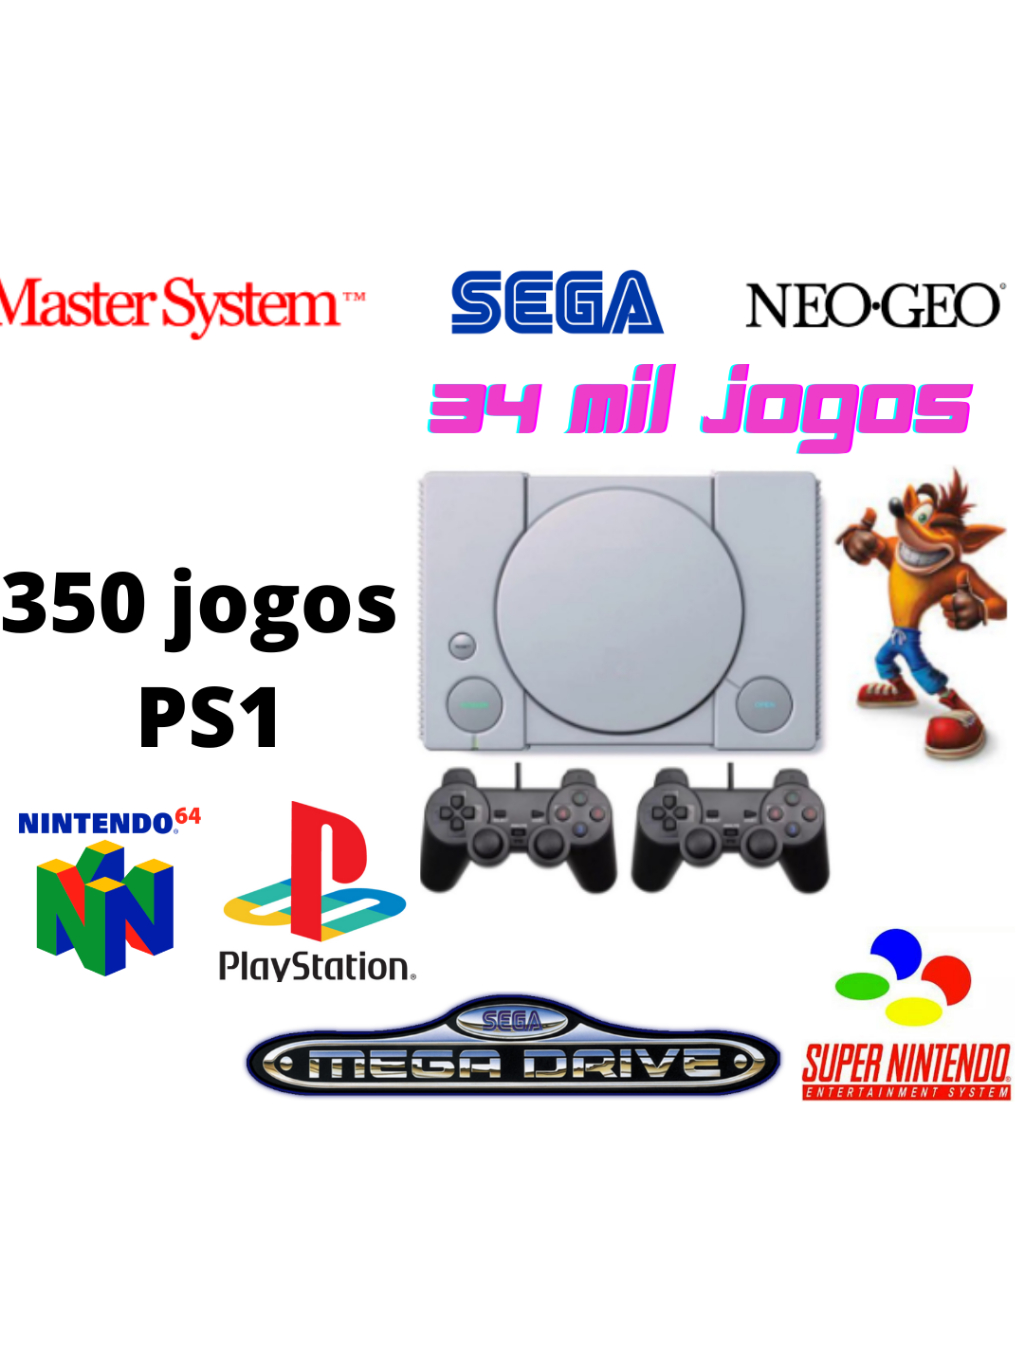 Vídeo Game Retro 34 Mil jogos 64 GB 2 Controles Modelo PS1